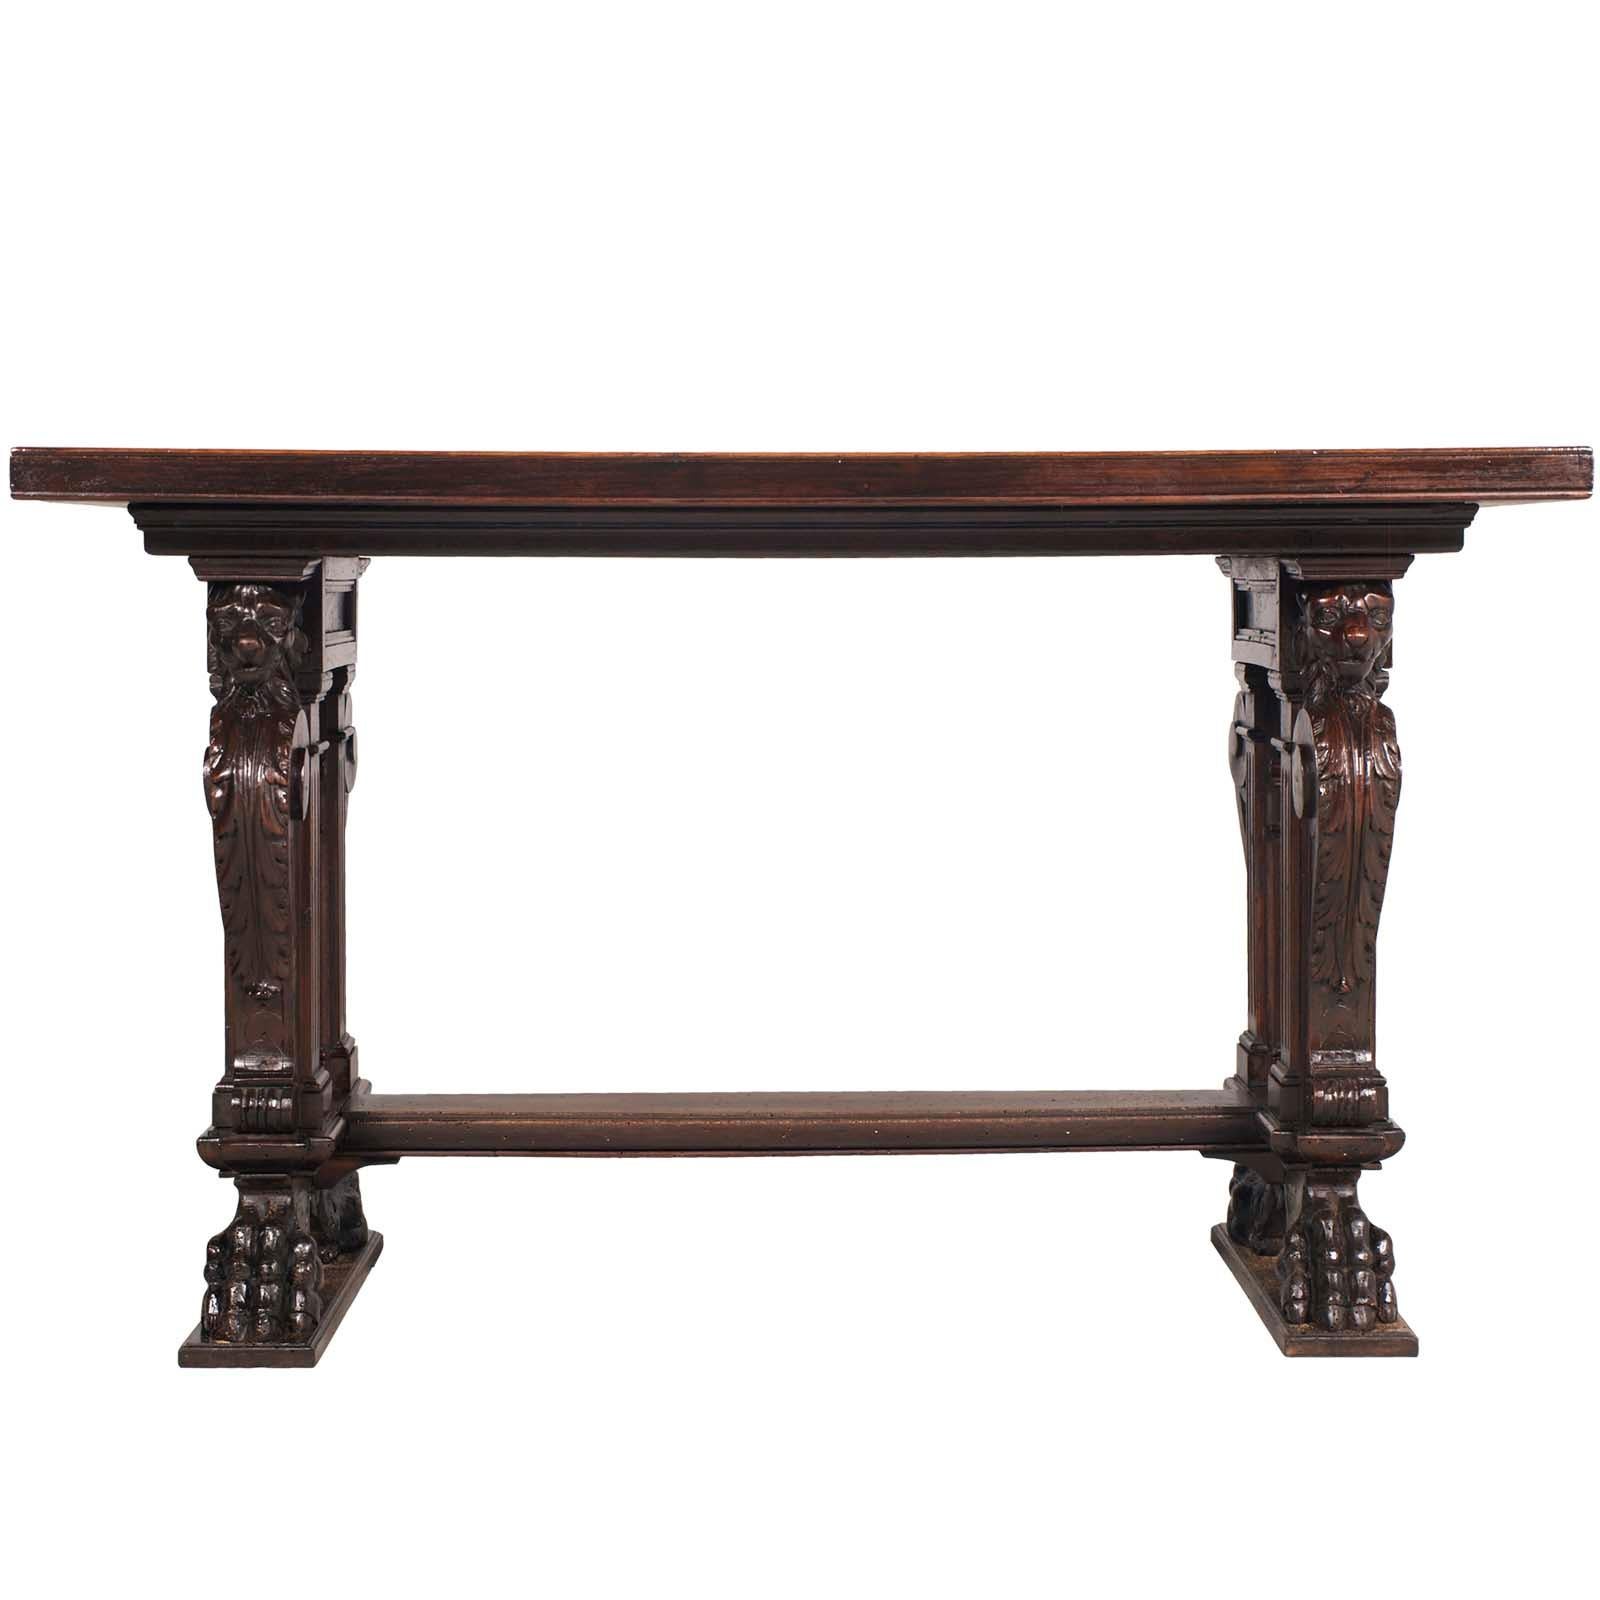 Tisch aus dem späten 19. Jahrhundert, Schreibtisch aus handgeschnitztem Nussbaum, von Testolini & Salviati.
Der wichtige Schreibtisch ist ganz aus massivem Nussbaumholz, mit einer furnierten Platte. Neoklassische Beine mit 4 geschnitzten Löwen, die